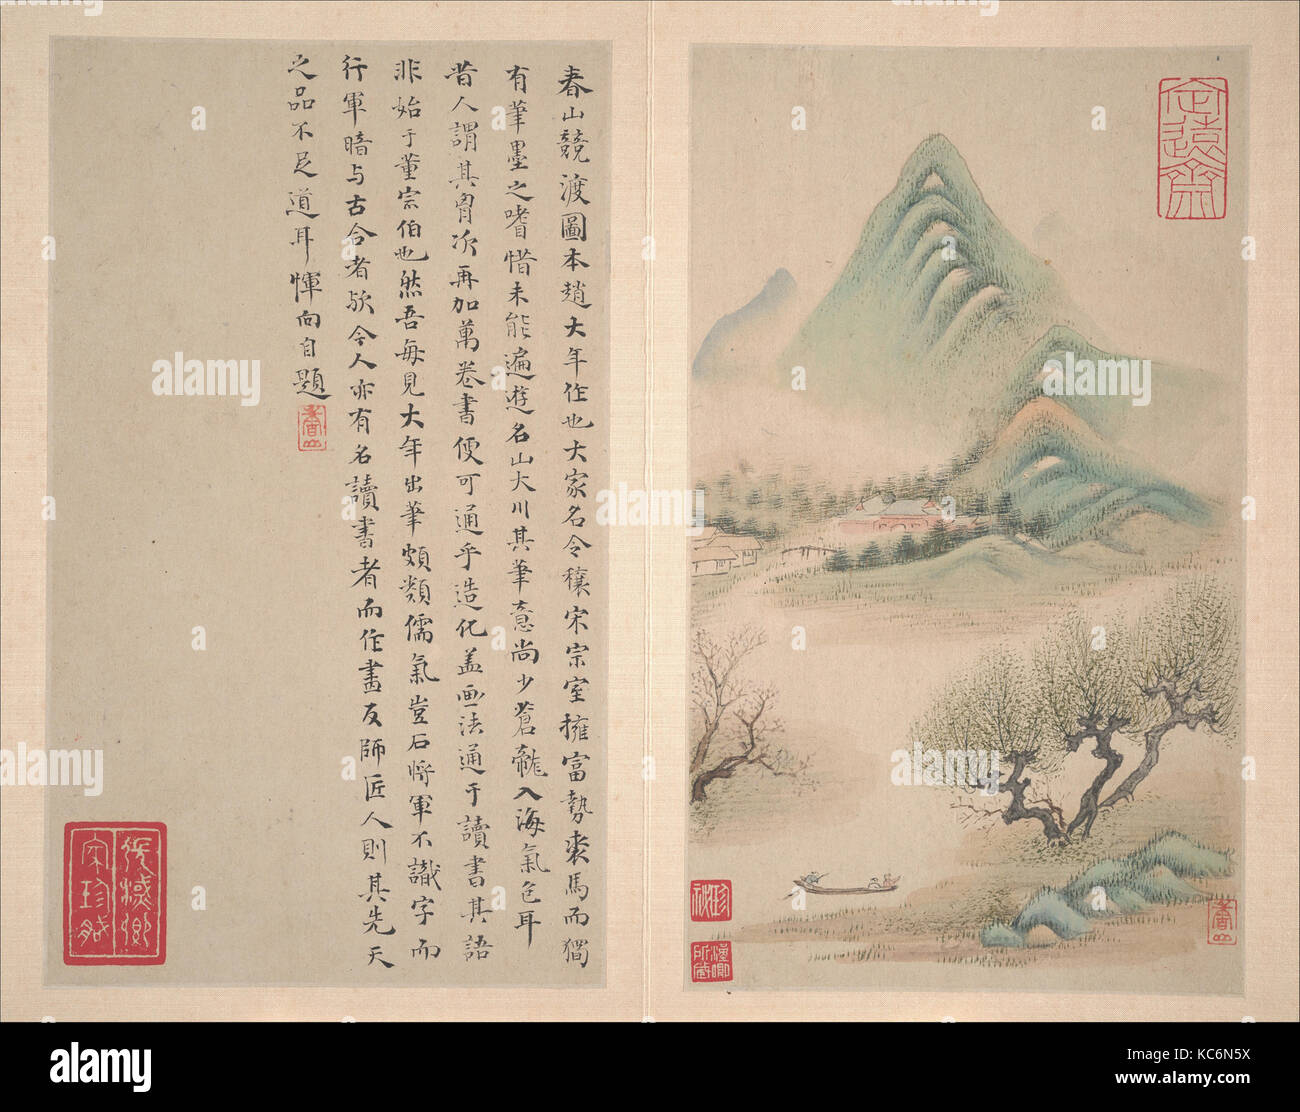 明/清 惲向 仿古山水圖 冊 紙本, Landscapes after old masters, Yun Xiang, datable to 1638 or 1650 Stock Photo